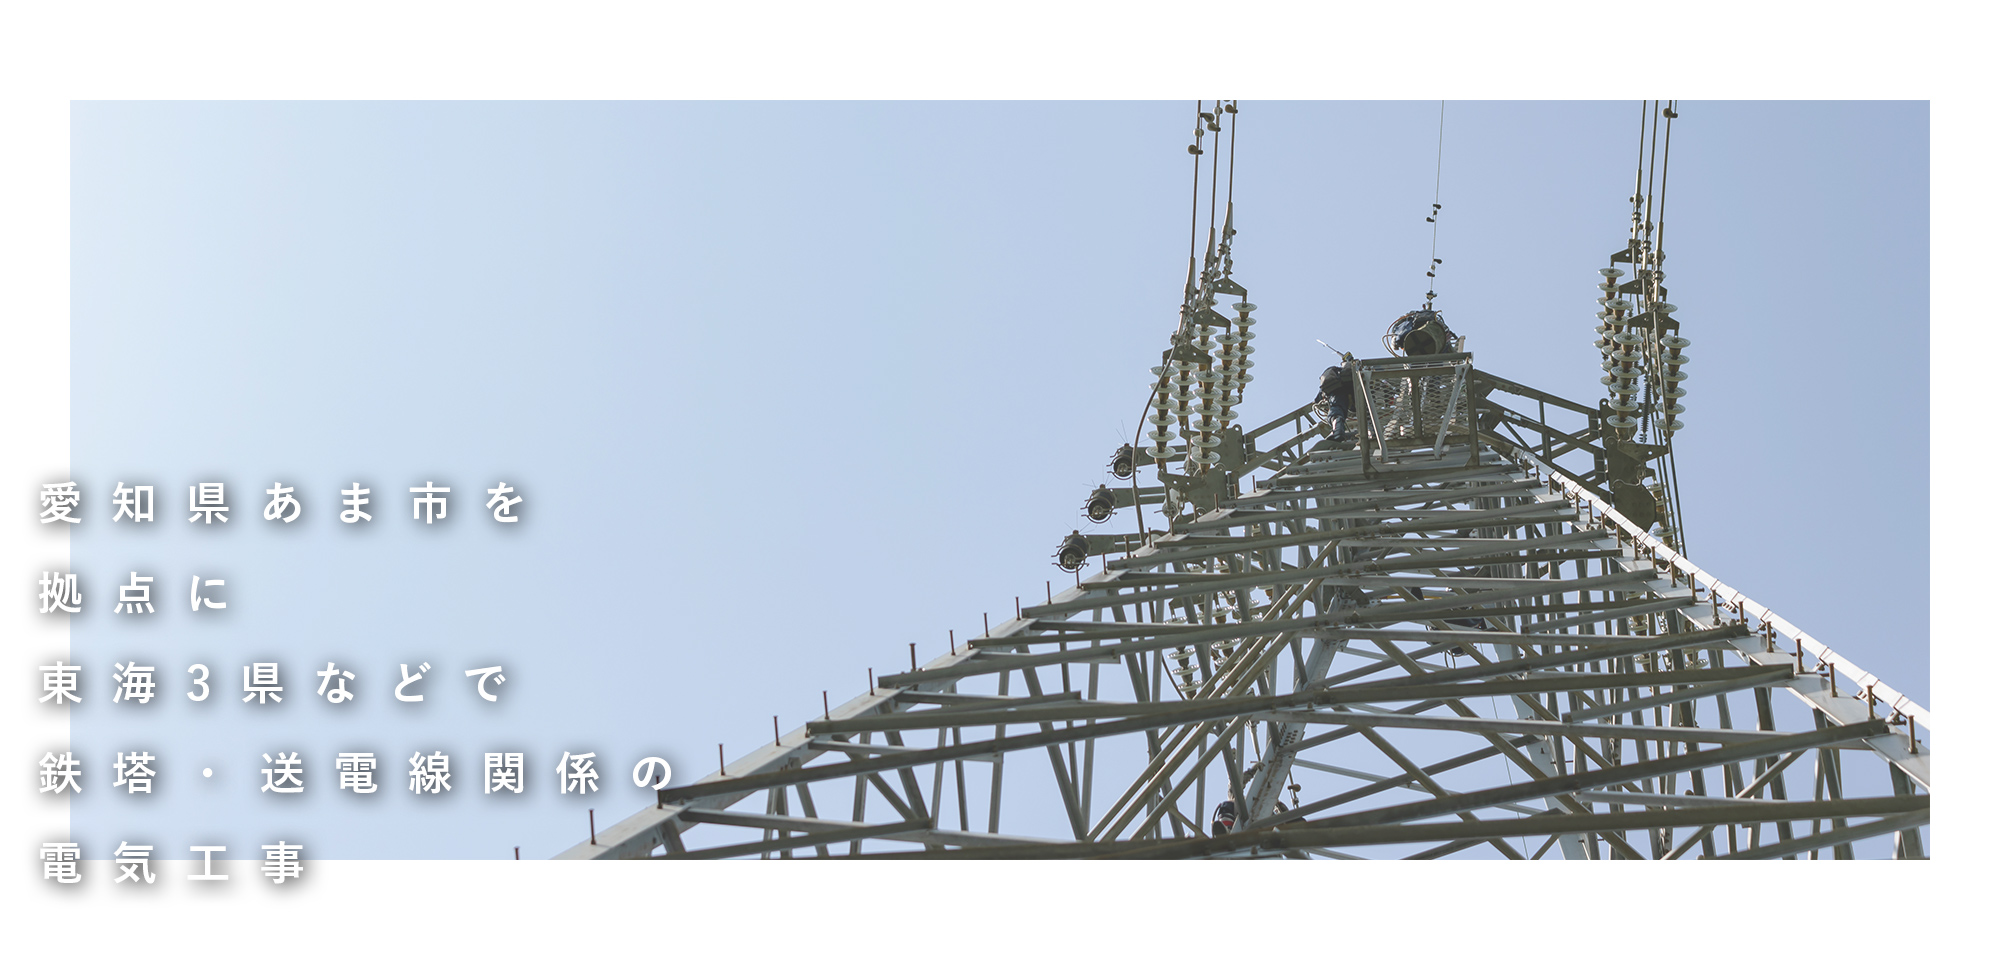 愛知県あま市を拠点に東海3県などで 鉄塔・送電線関係の電気工事